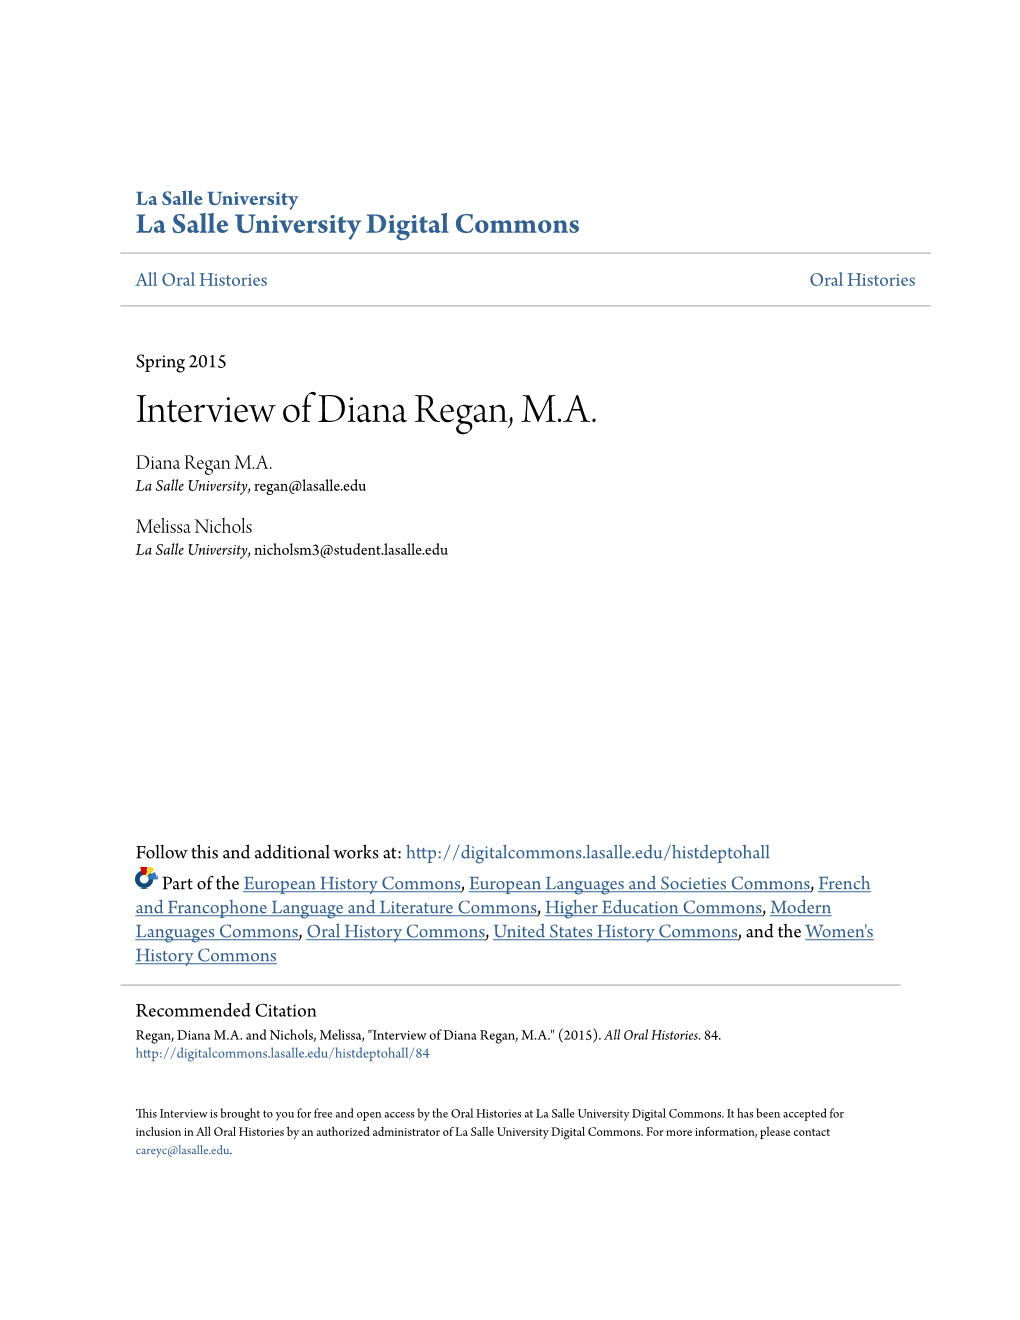 Interview of Diana Regan, M.A. Diana Regan M.A